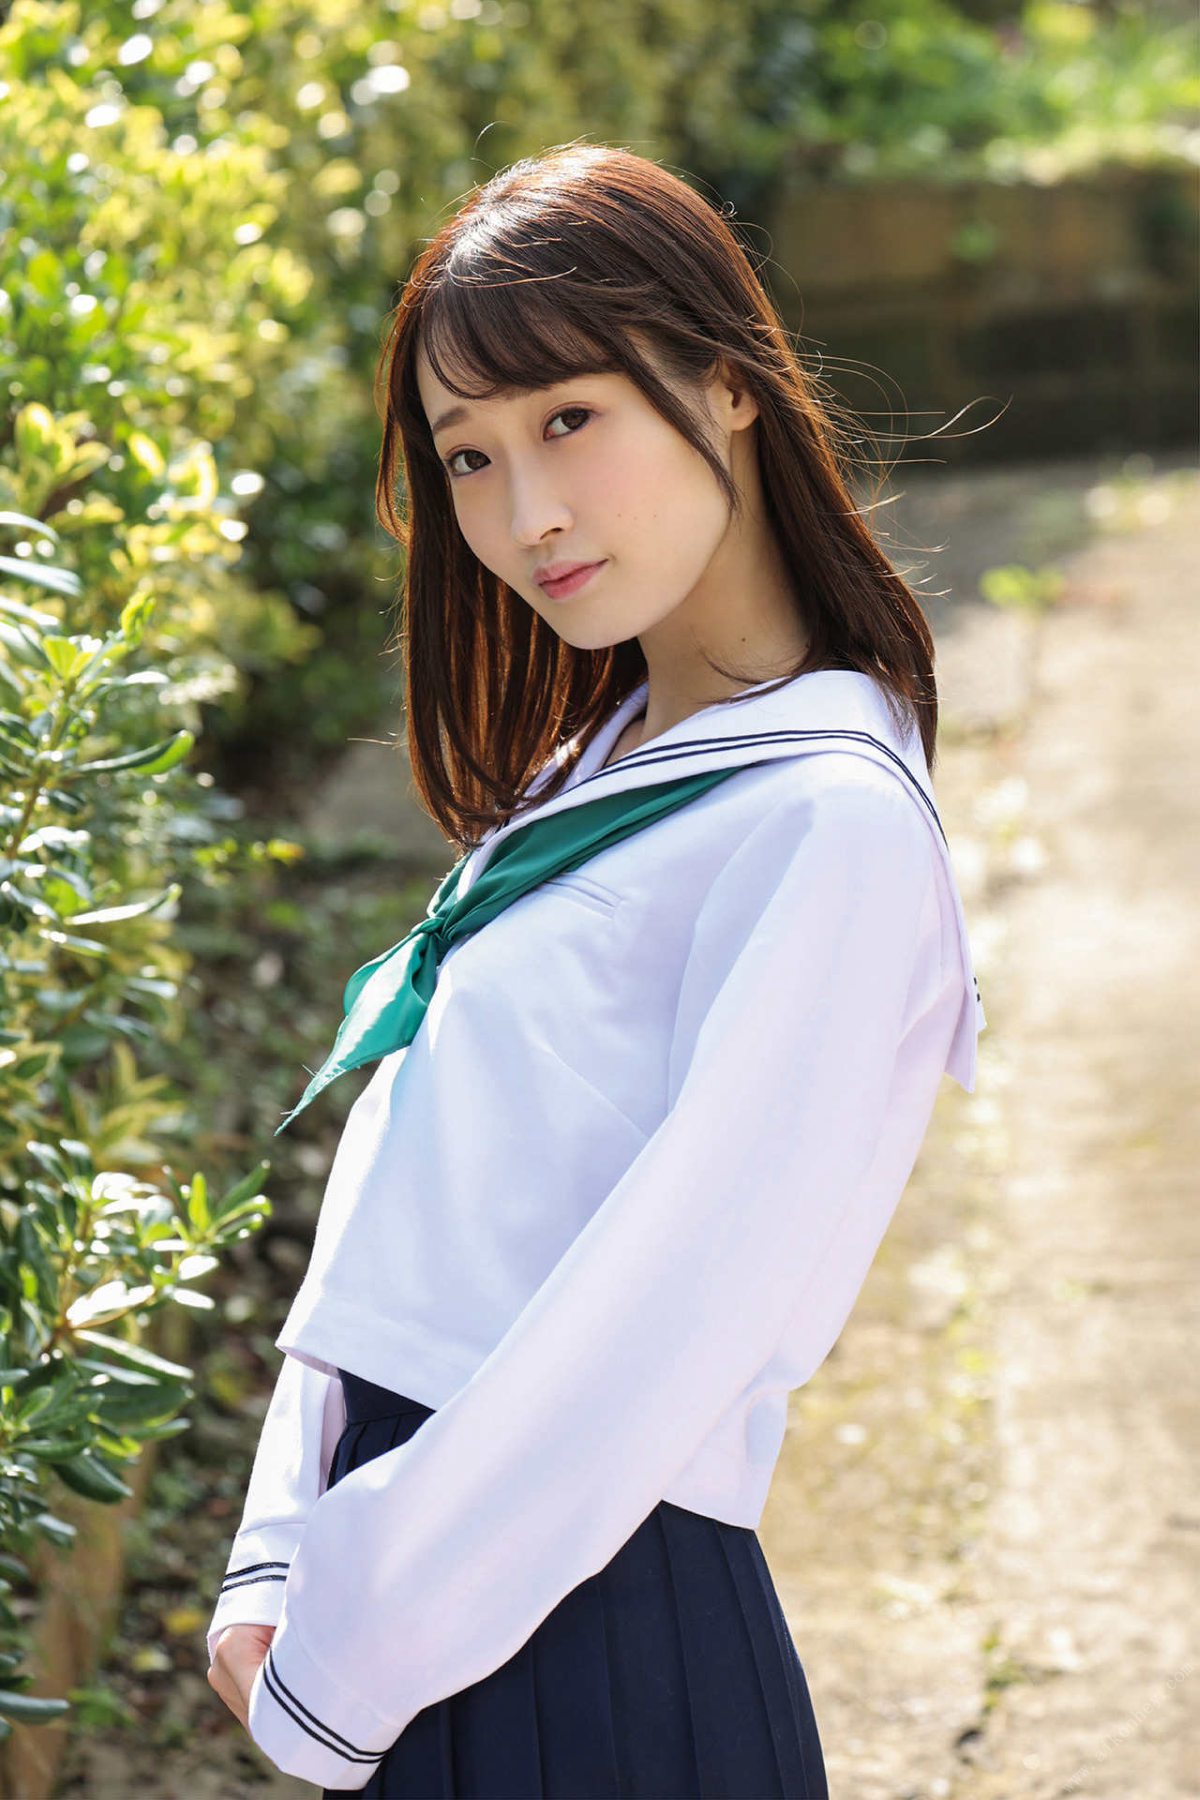 Photobook Mizuki Amane 天然美月 Little girl 幼な少女 2021 12 17 0006 0572842206.jpg